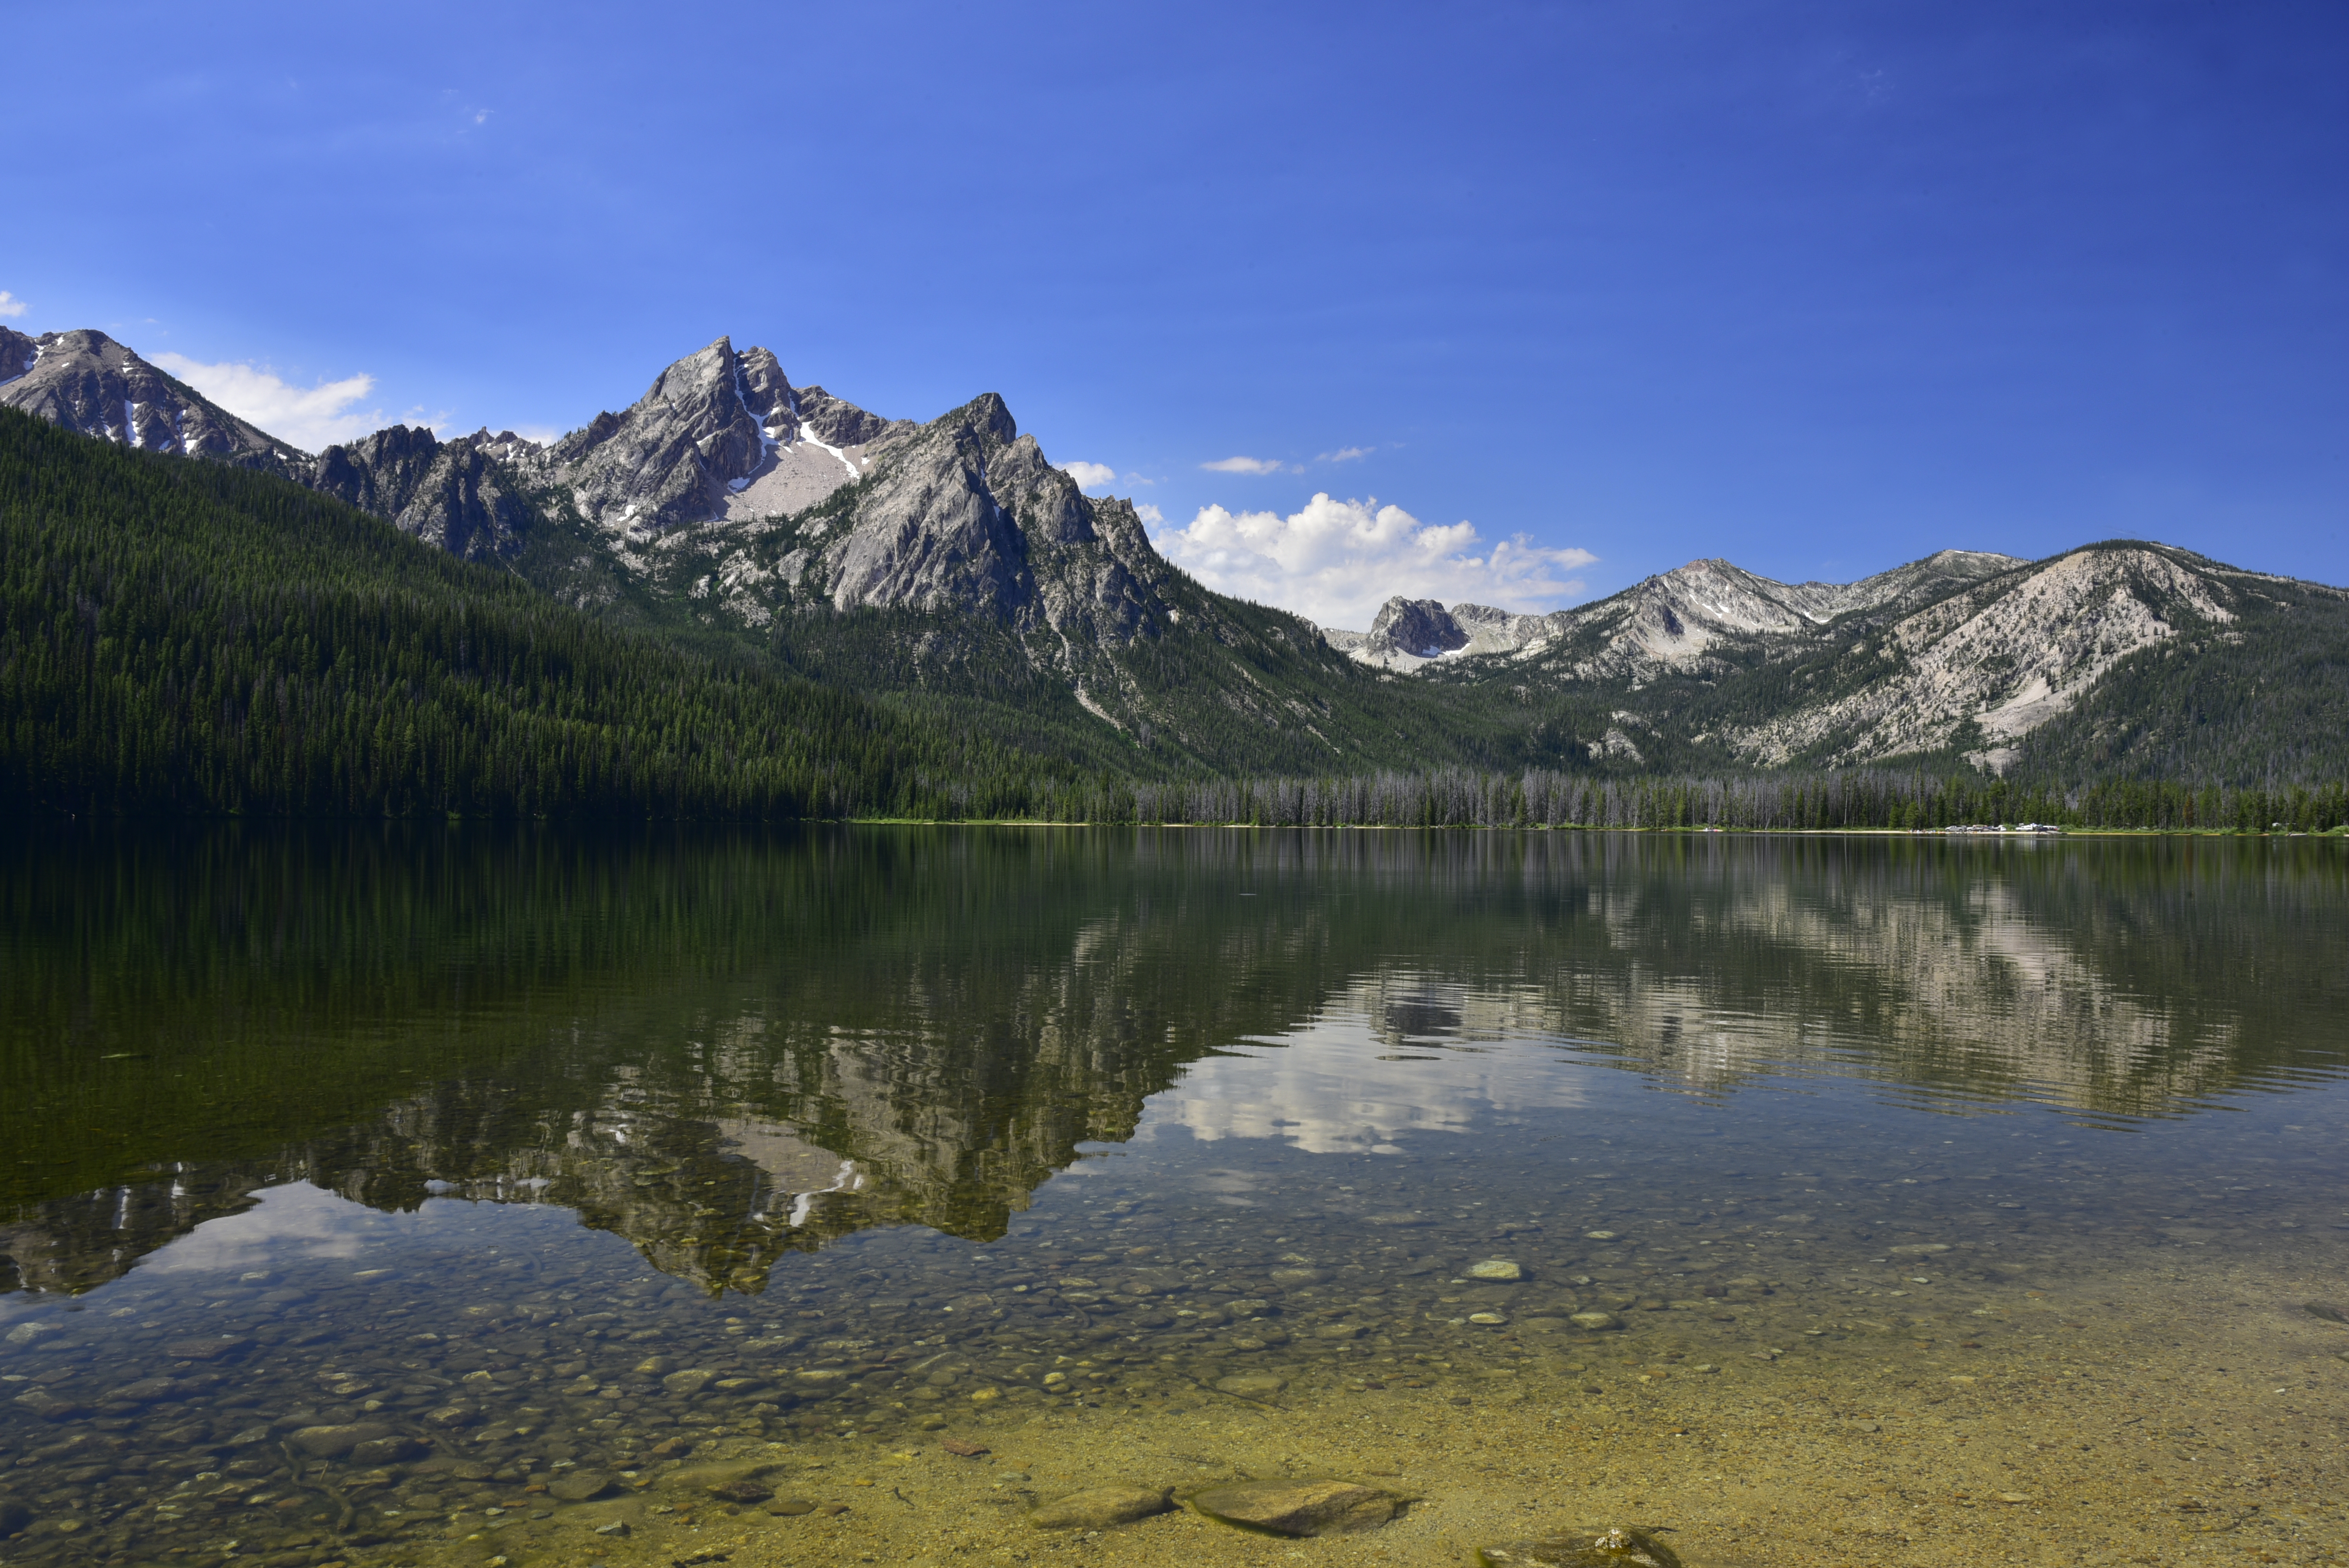 Stanley Lake, McGown Peak  -  Sawtooth National Recreation Area, Idaho